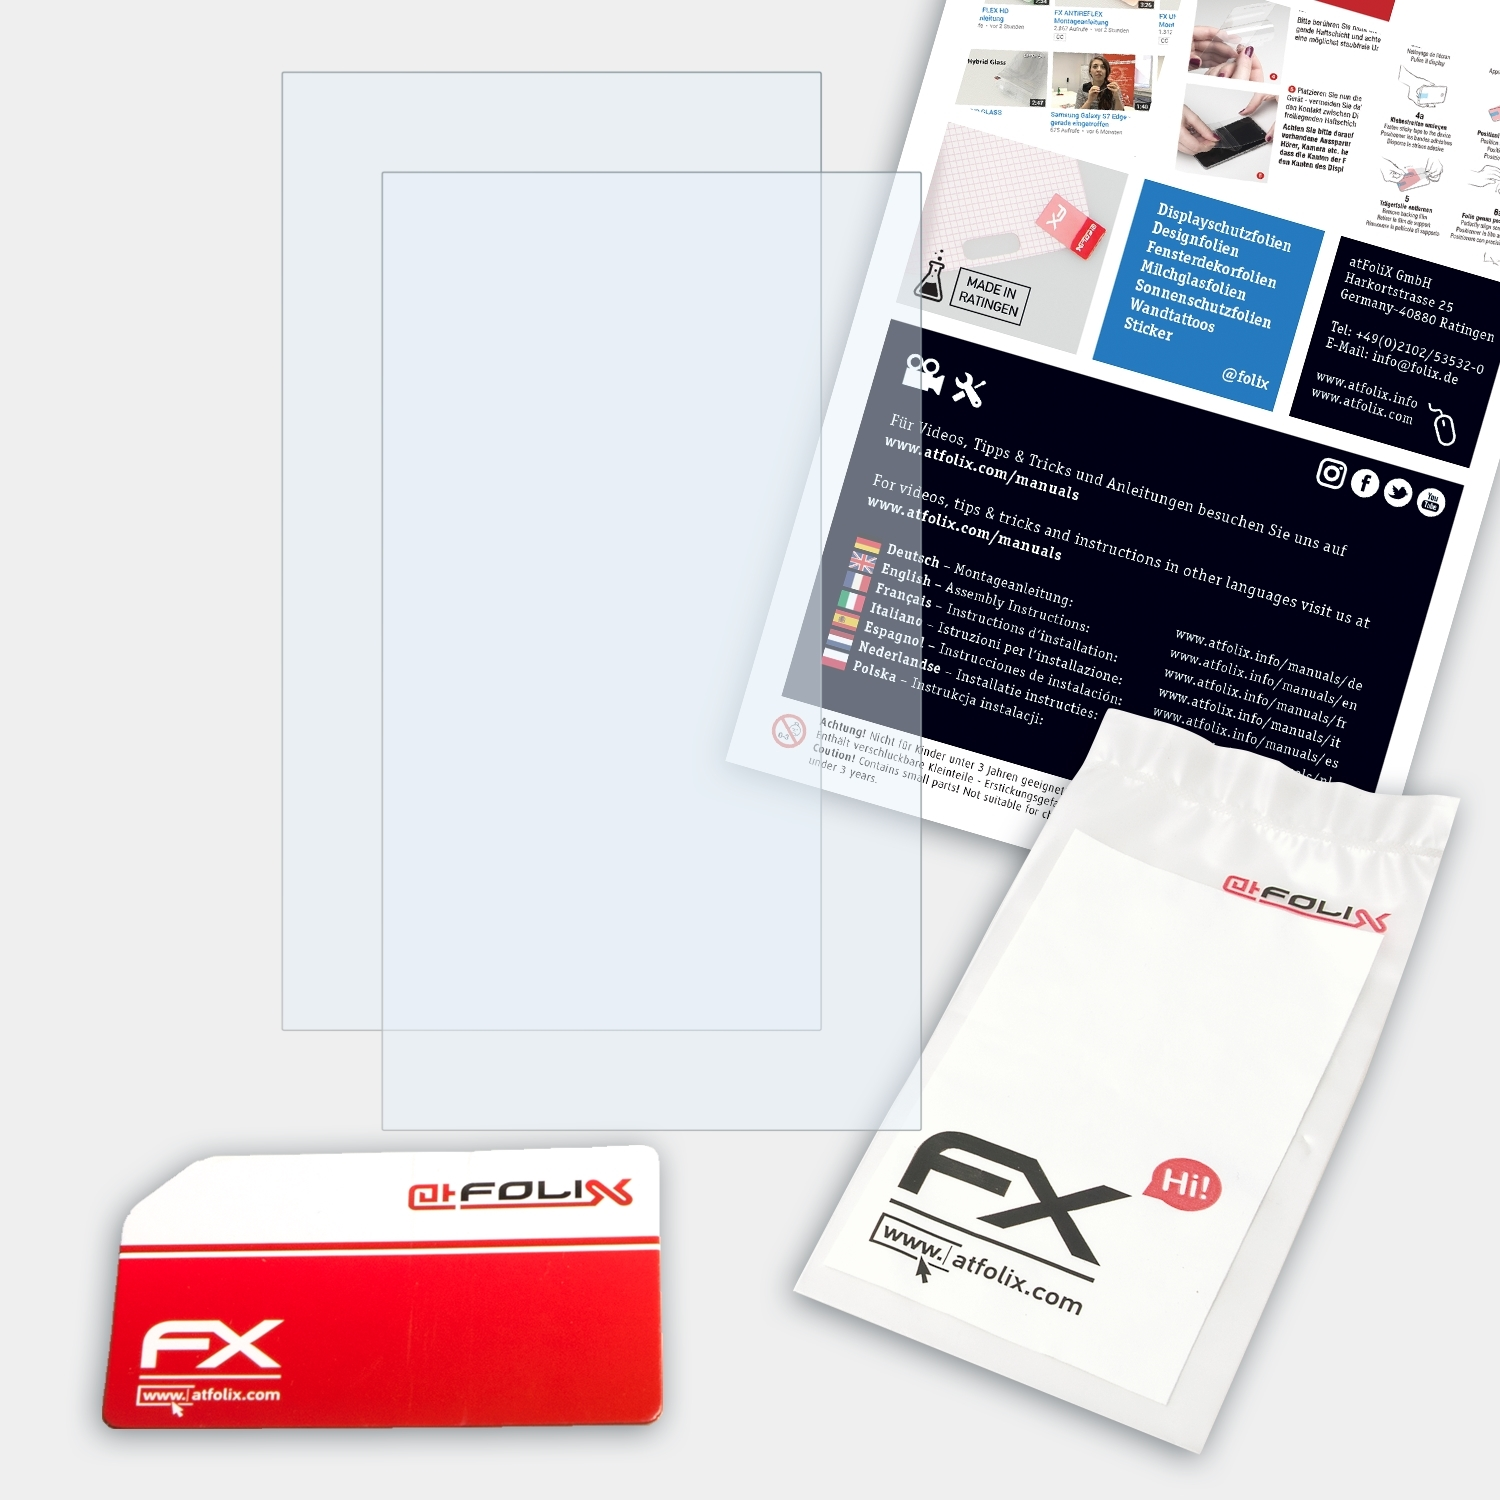 2x FX-Clear Displayschutz(für TravelMate P2 (P215-52)) Acer ATFOLIX